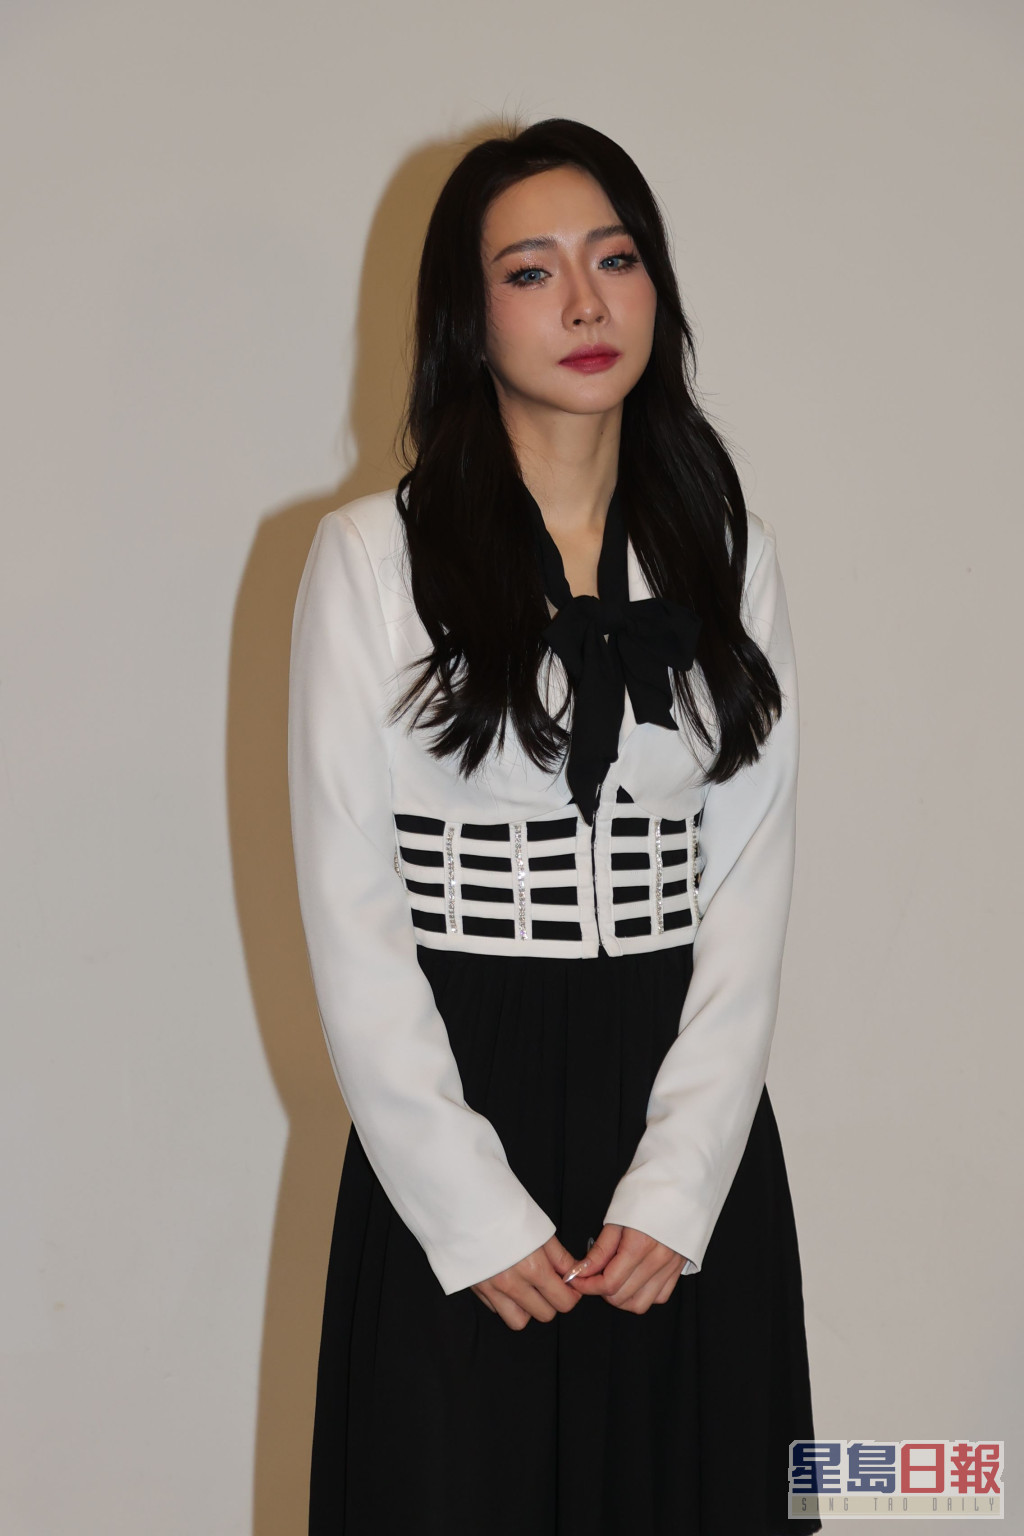 菊梓乔表示演唱会上会挑战性感极限。